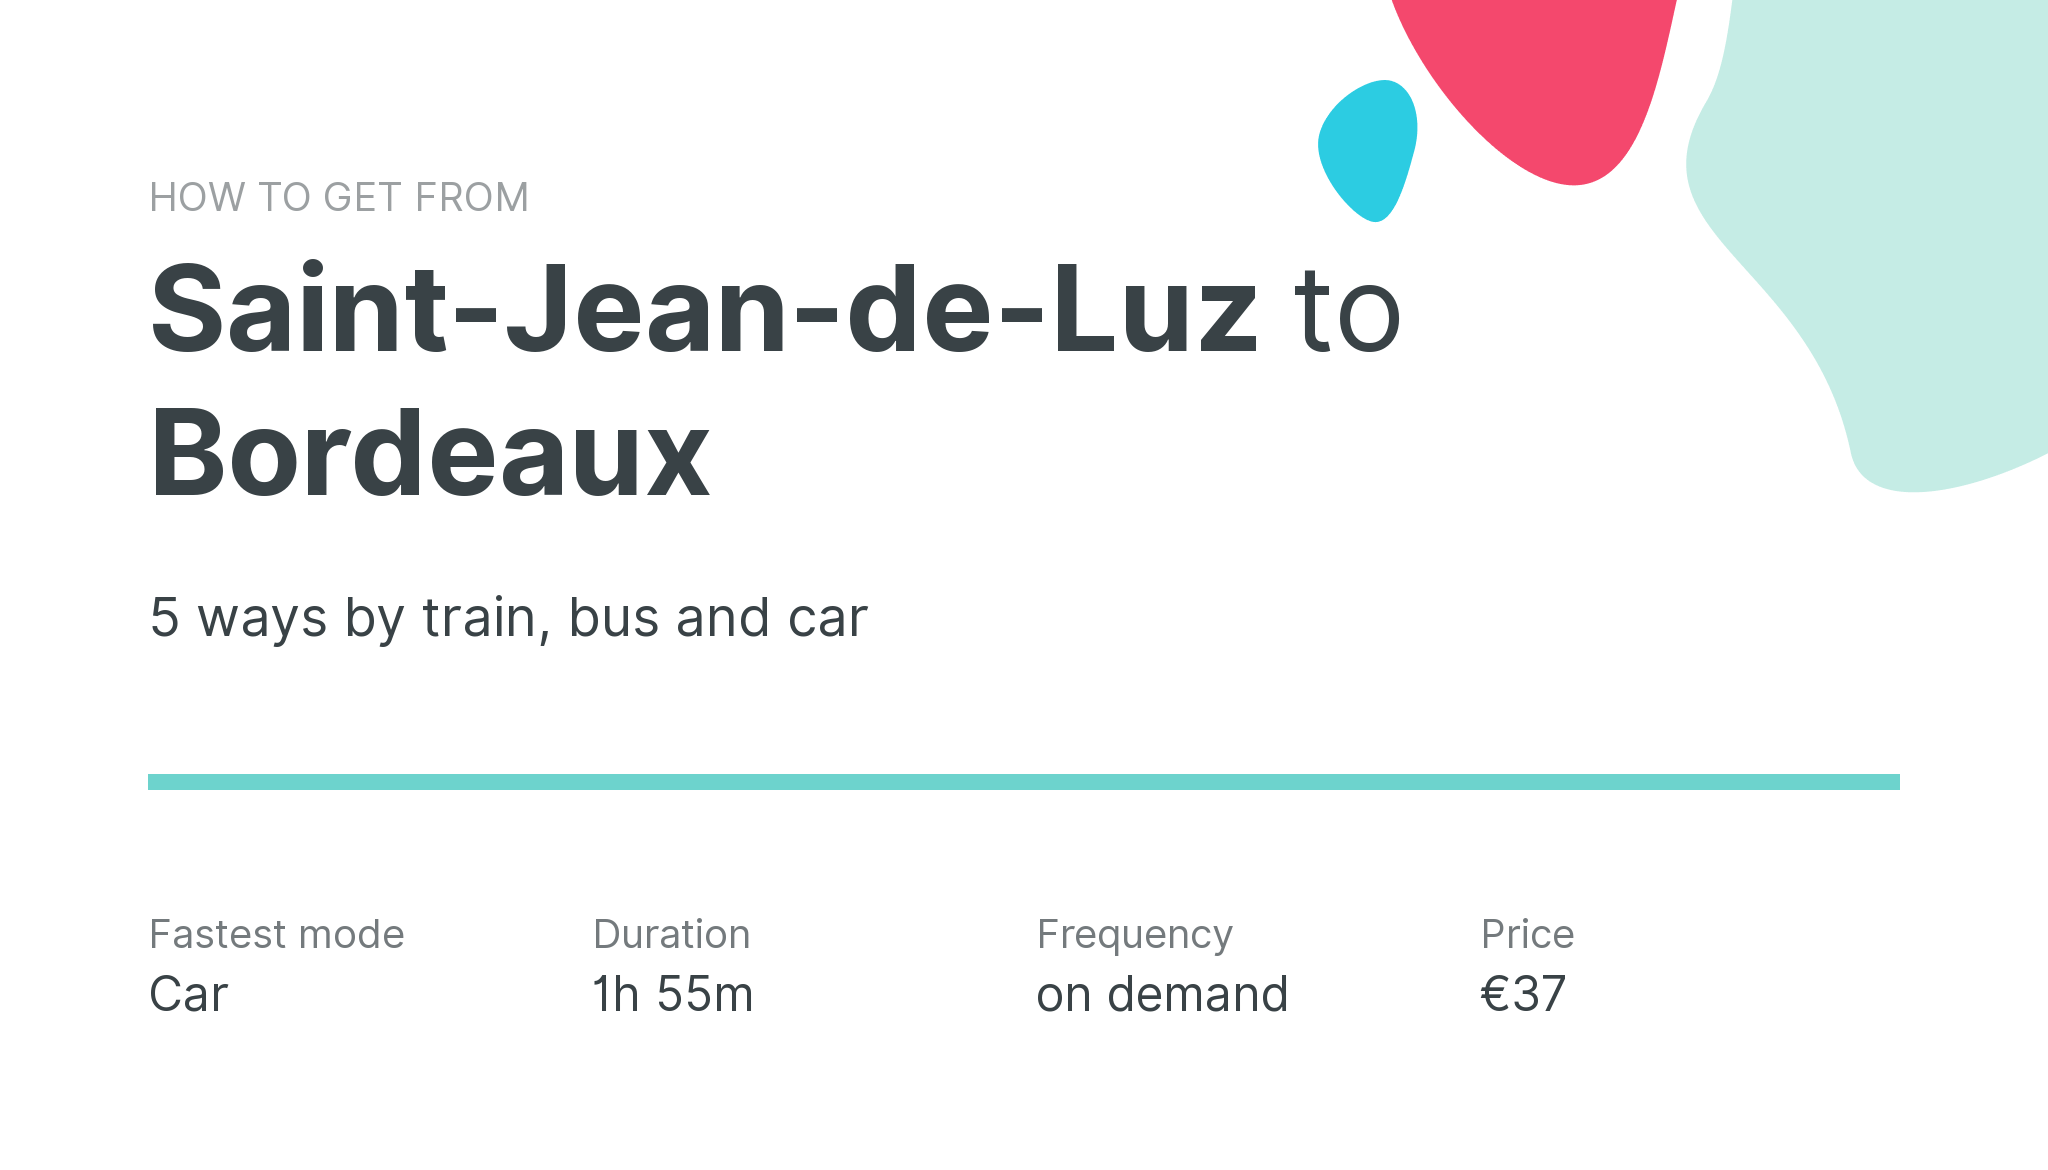 How do I get from Saint-Jean-de-Luz to Bordeaux